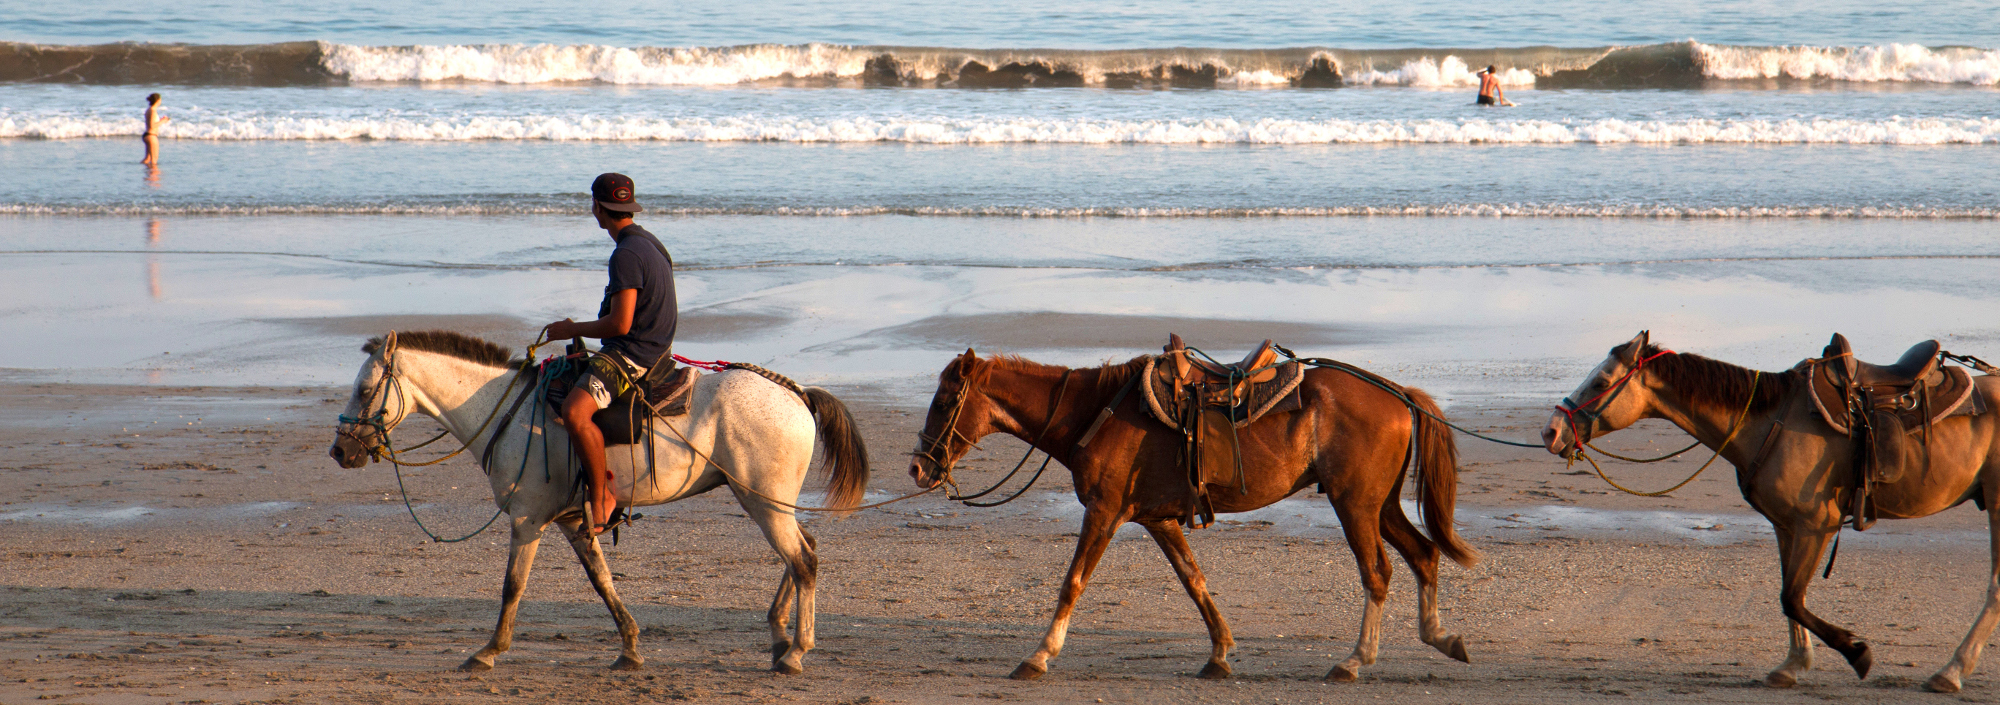 Pferde am Strand von Samara in Costa Rica